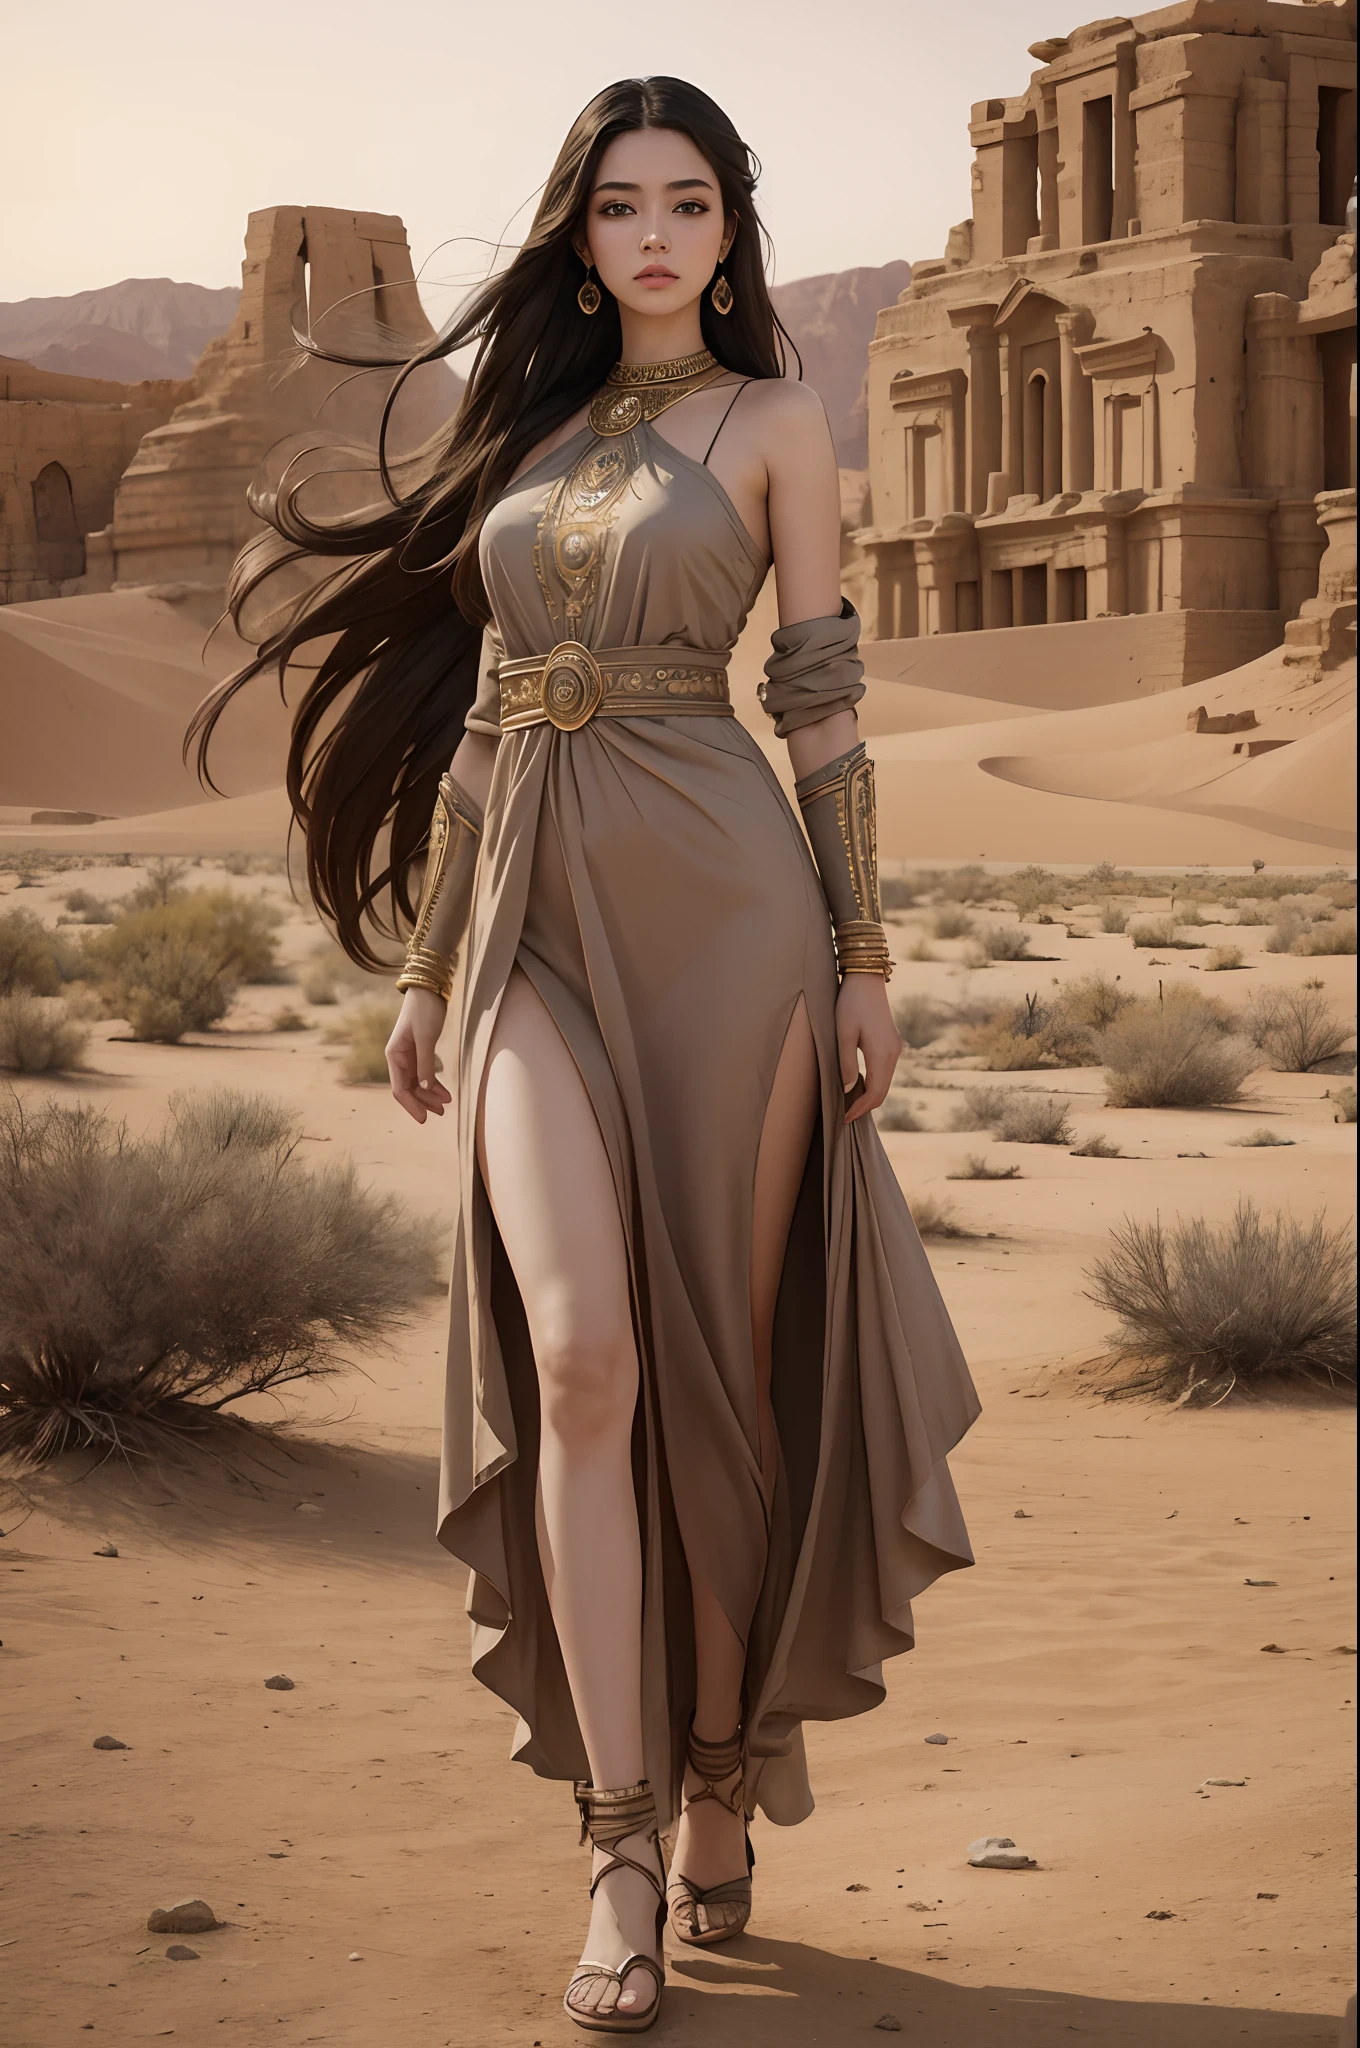 여자 1명, 발렌시아가스타일, (걸작, 최고의 품질, 현실적인), 긴 머리, 전신샷, 사막의 고대 도시를 배경으로, 매력적인 포즈, 상세한 눈